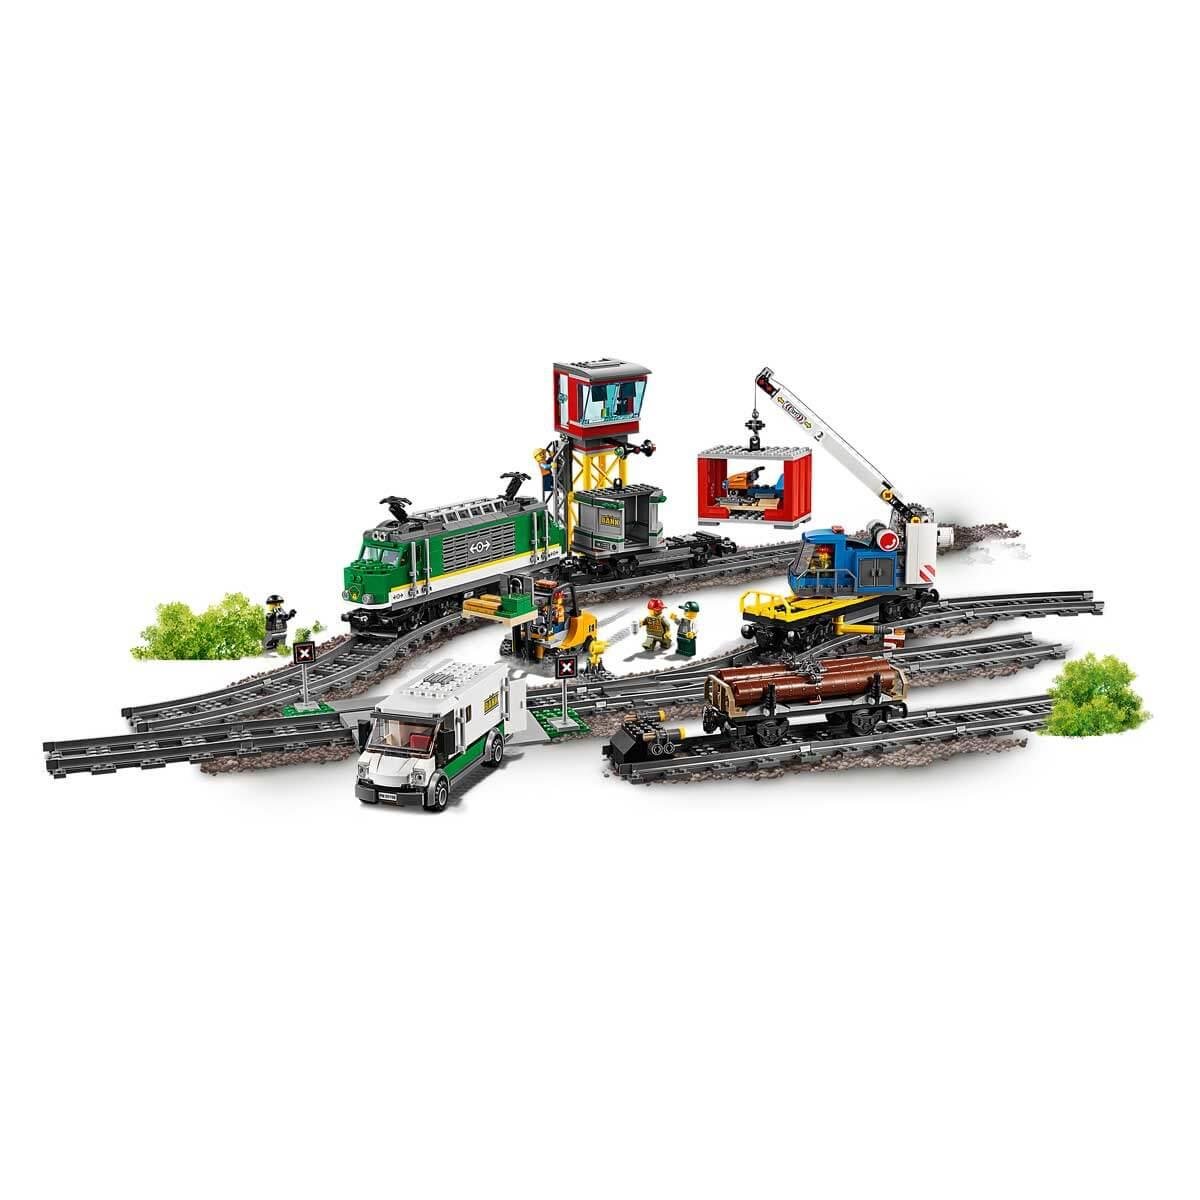 LEGO City Kargo Treni 60198 | Oyuncakmall